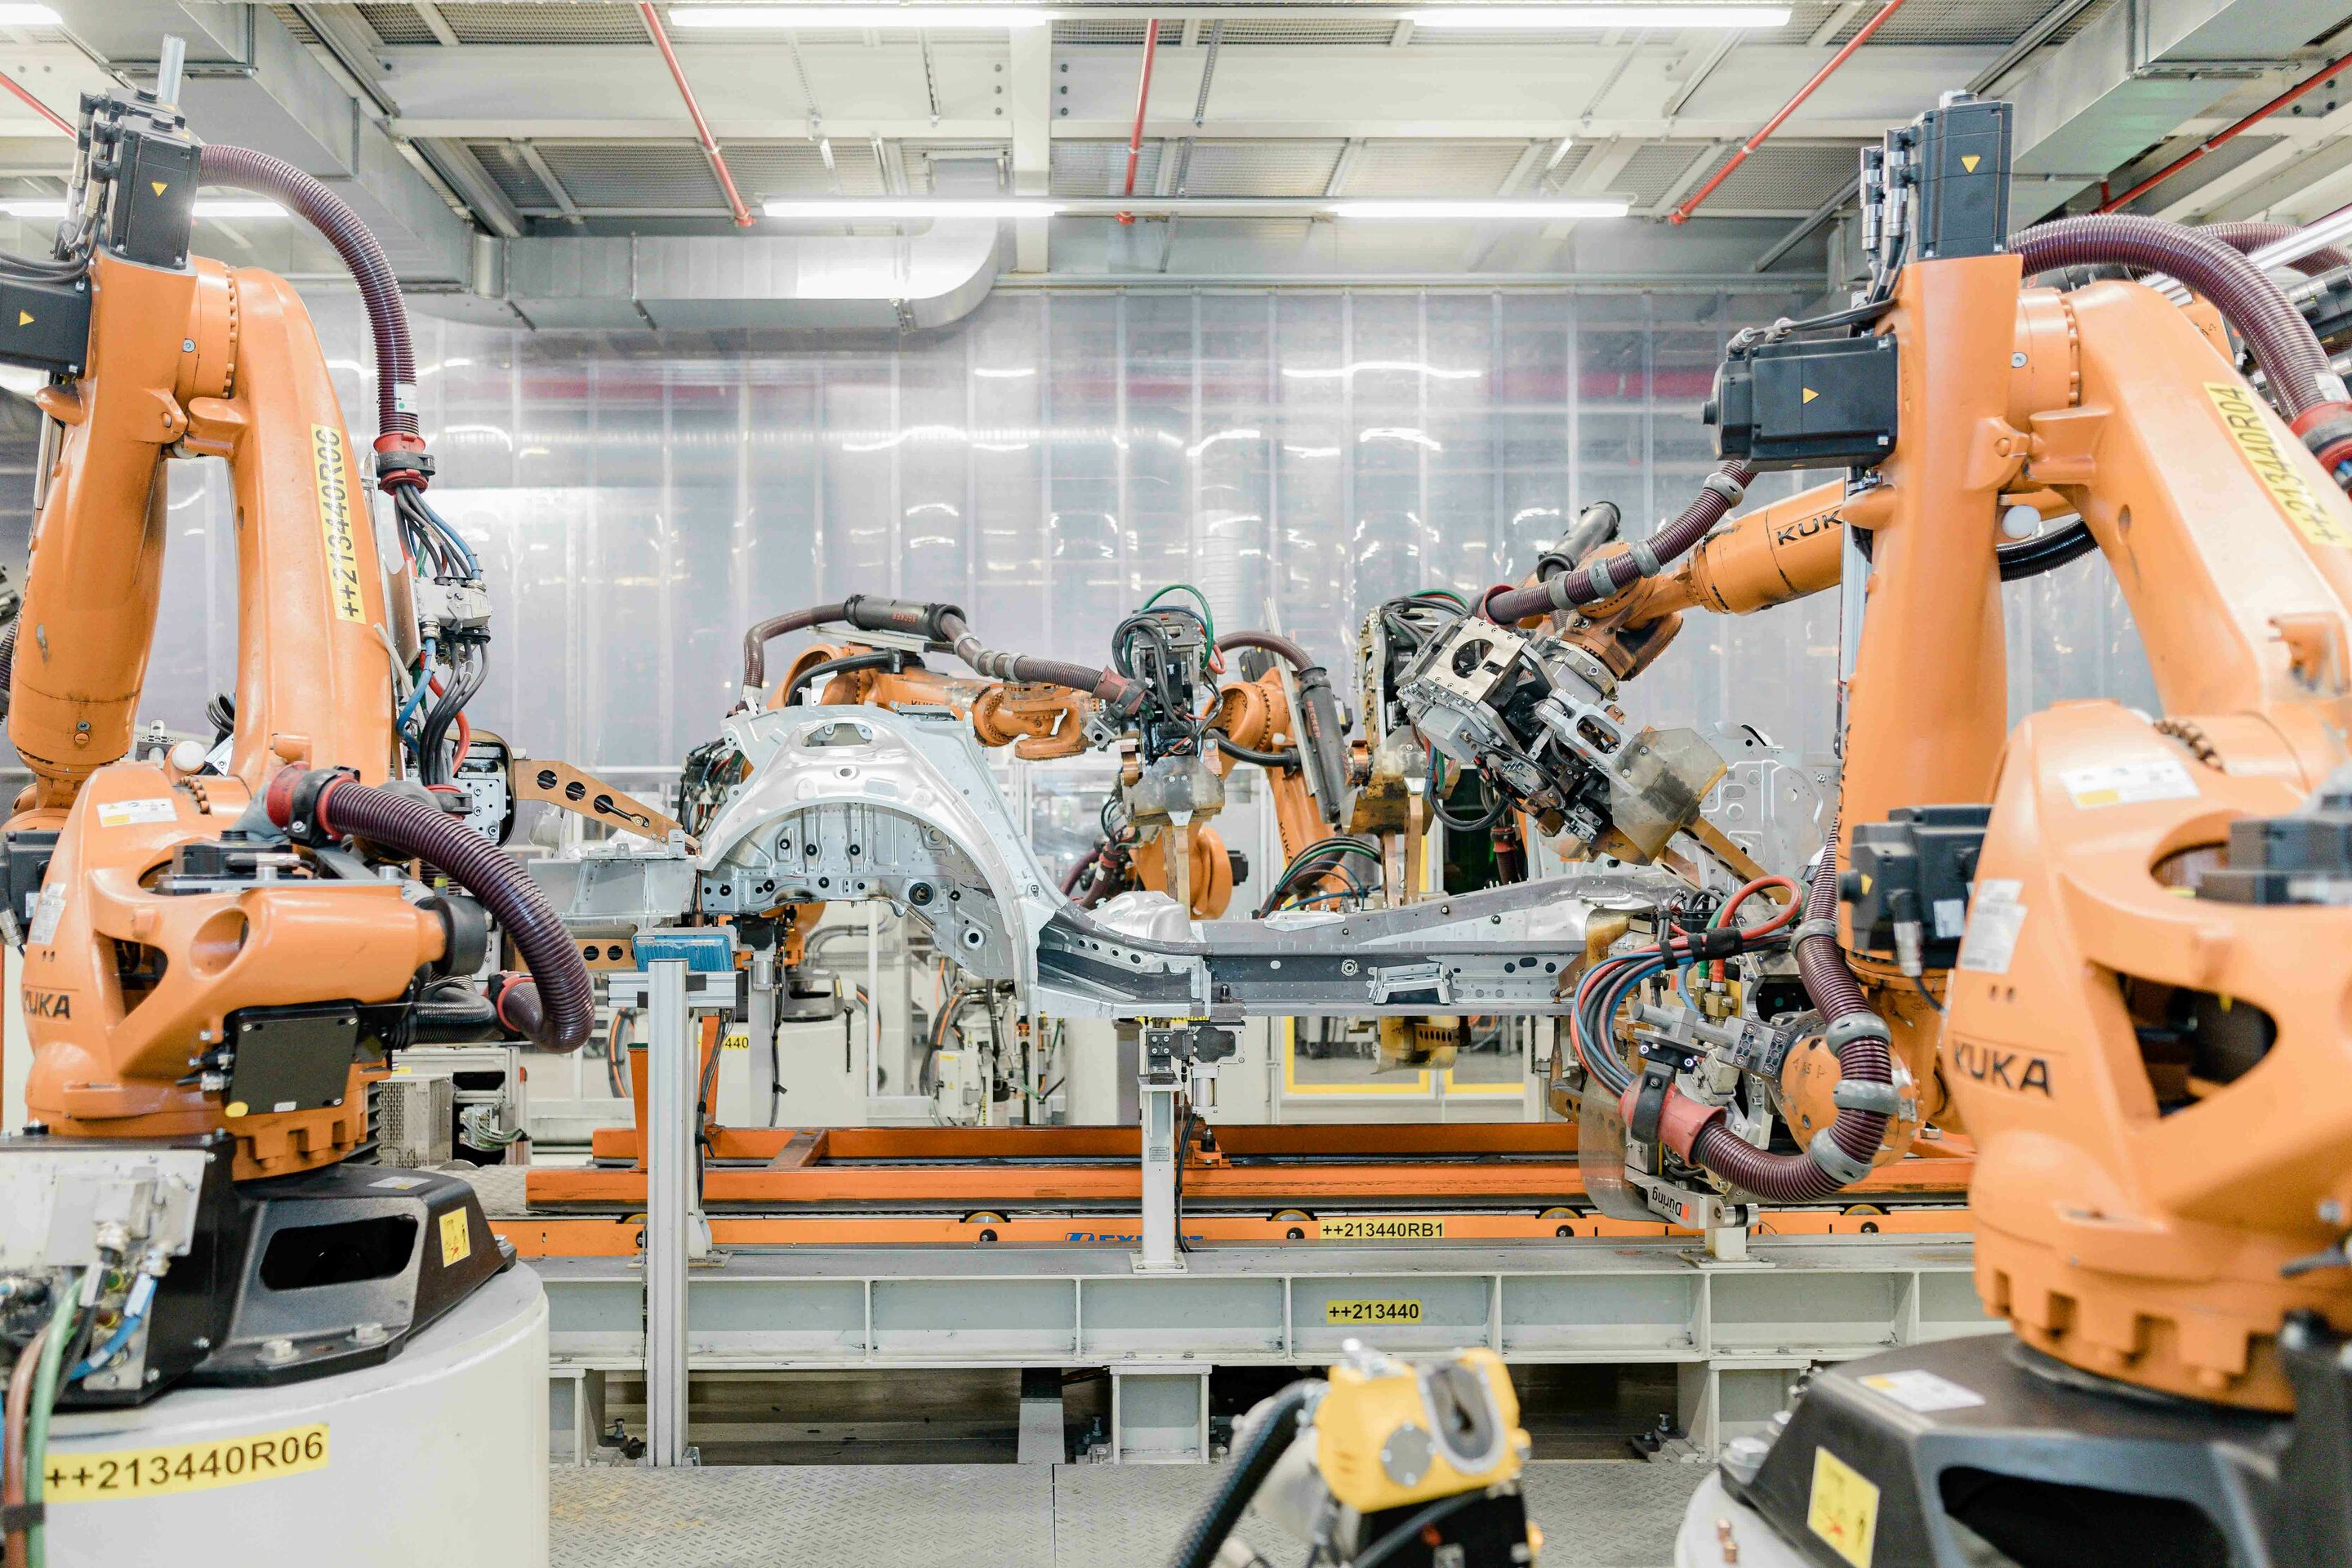 Audi startet Roll-out einer Künstlichen Intelligenz zur Qualitätskontrolle von Schweißpunkten